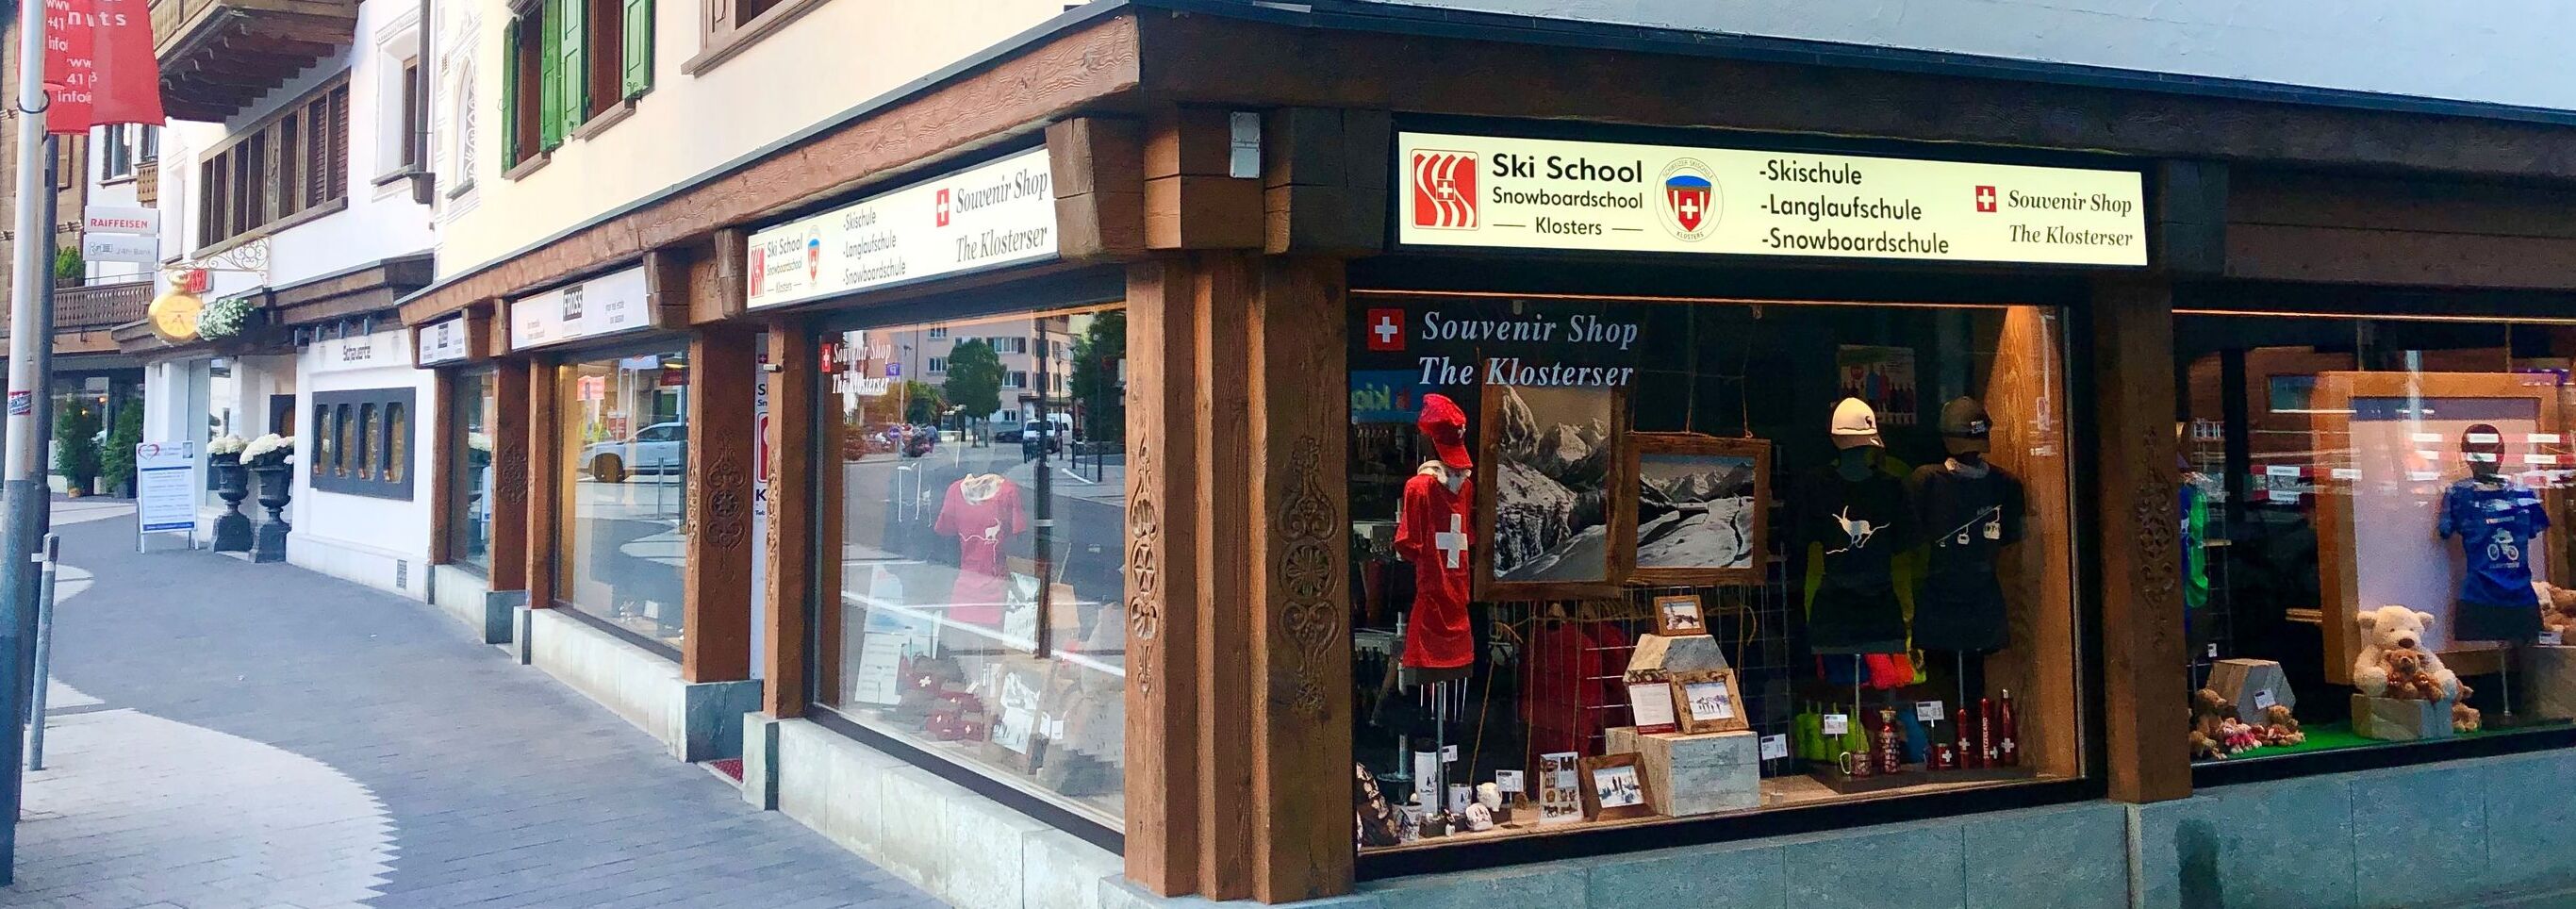 Souvenir shop in Klosters 